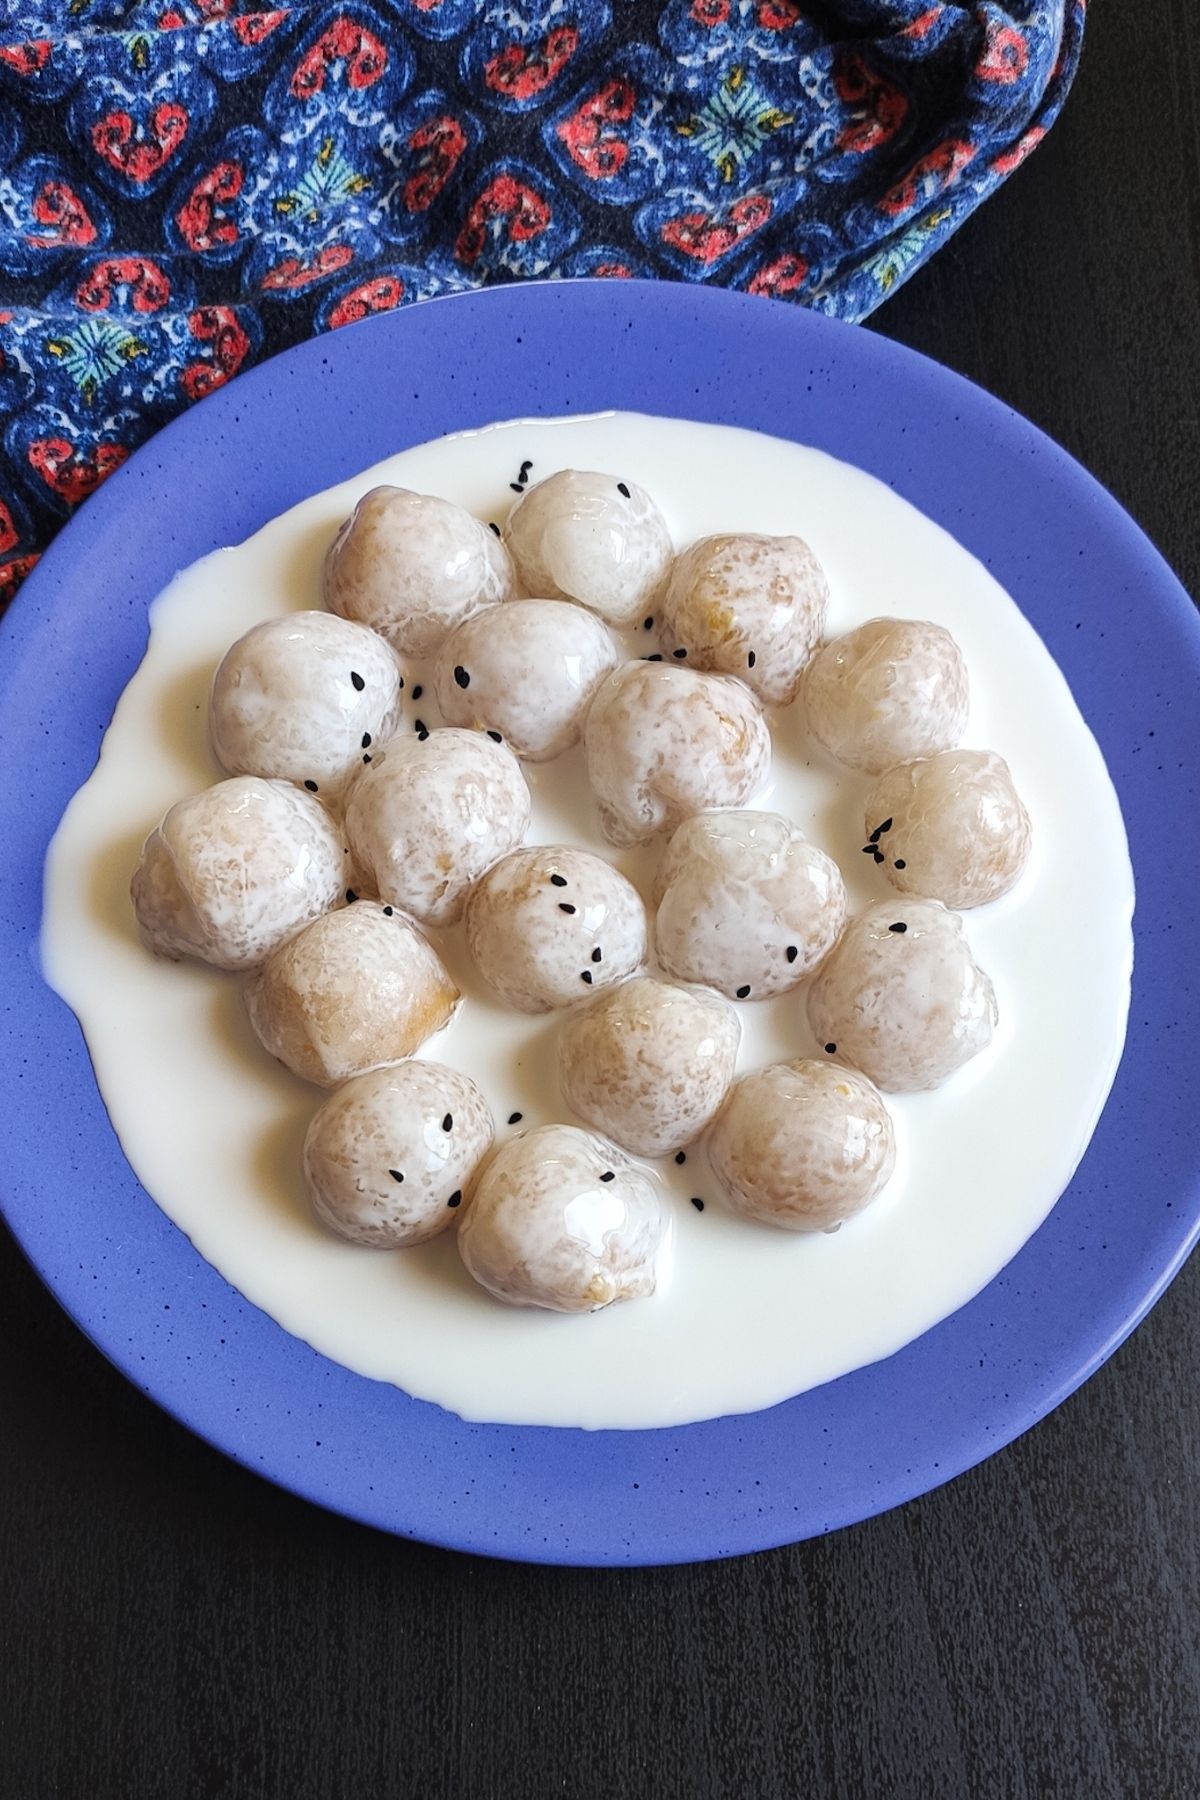 sweet potato dumpling garnished with black sesame seeds served on a blue plate